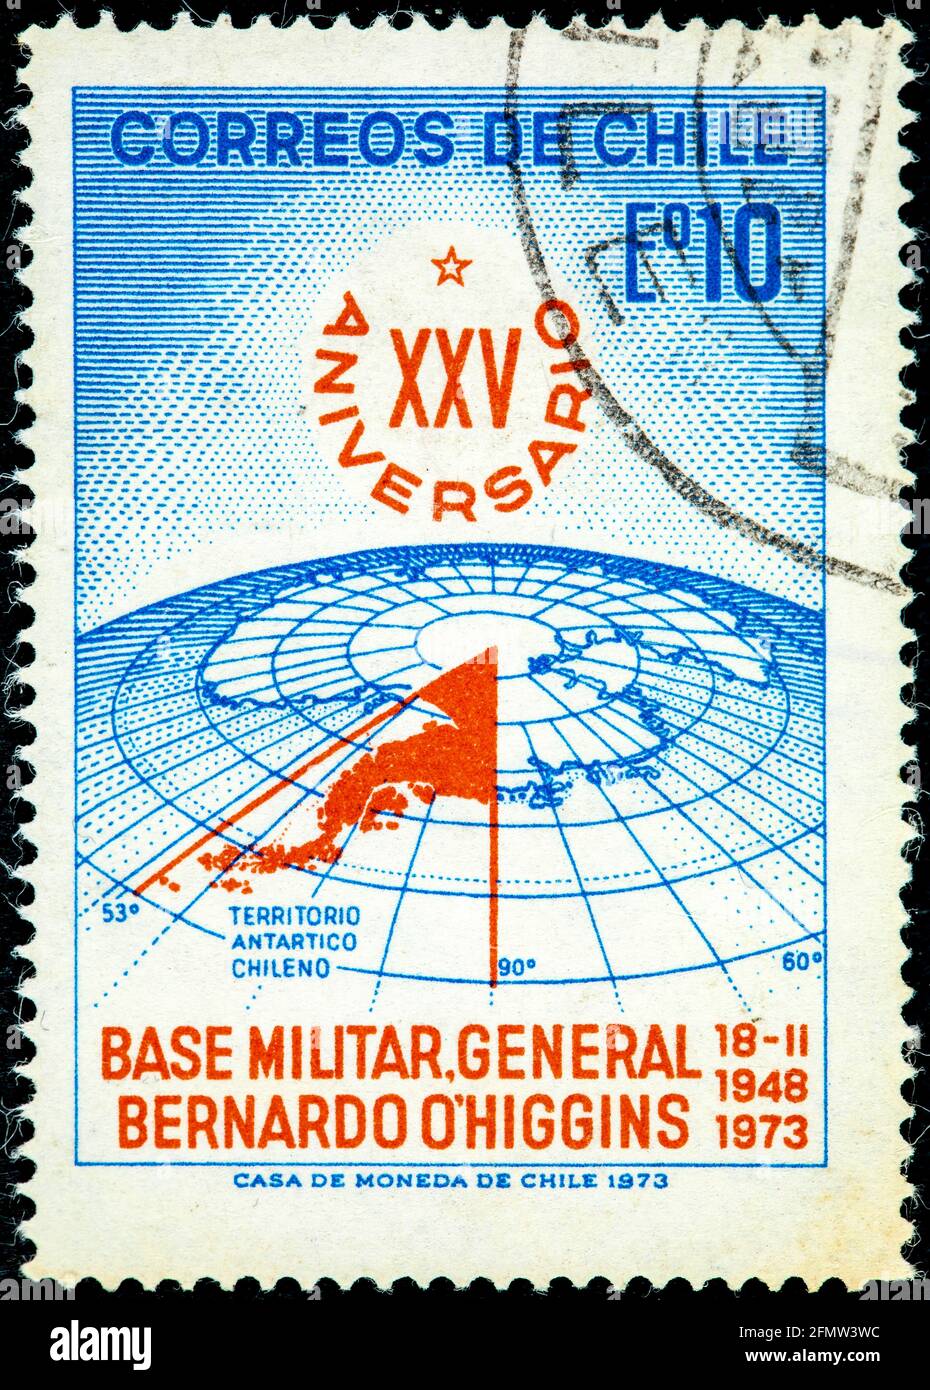 Chili - vers 1973: Timbre-poste annulé imprimé par le Chili, montre l'emplacement de la base militaire O'Higgins dans l'Antarctique à l'occasion du 25e anniversaire, circ Banque D'Images